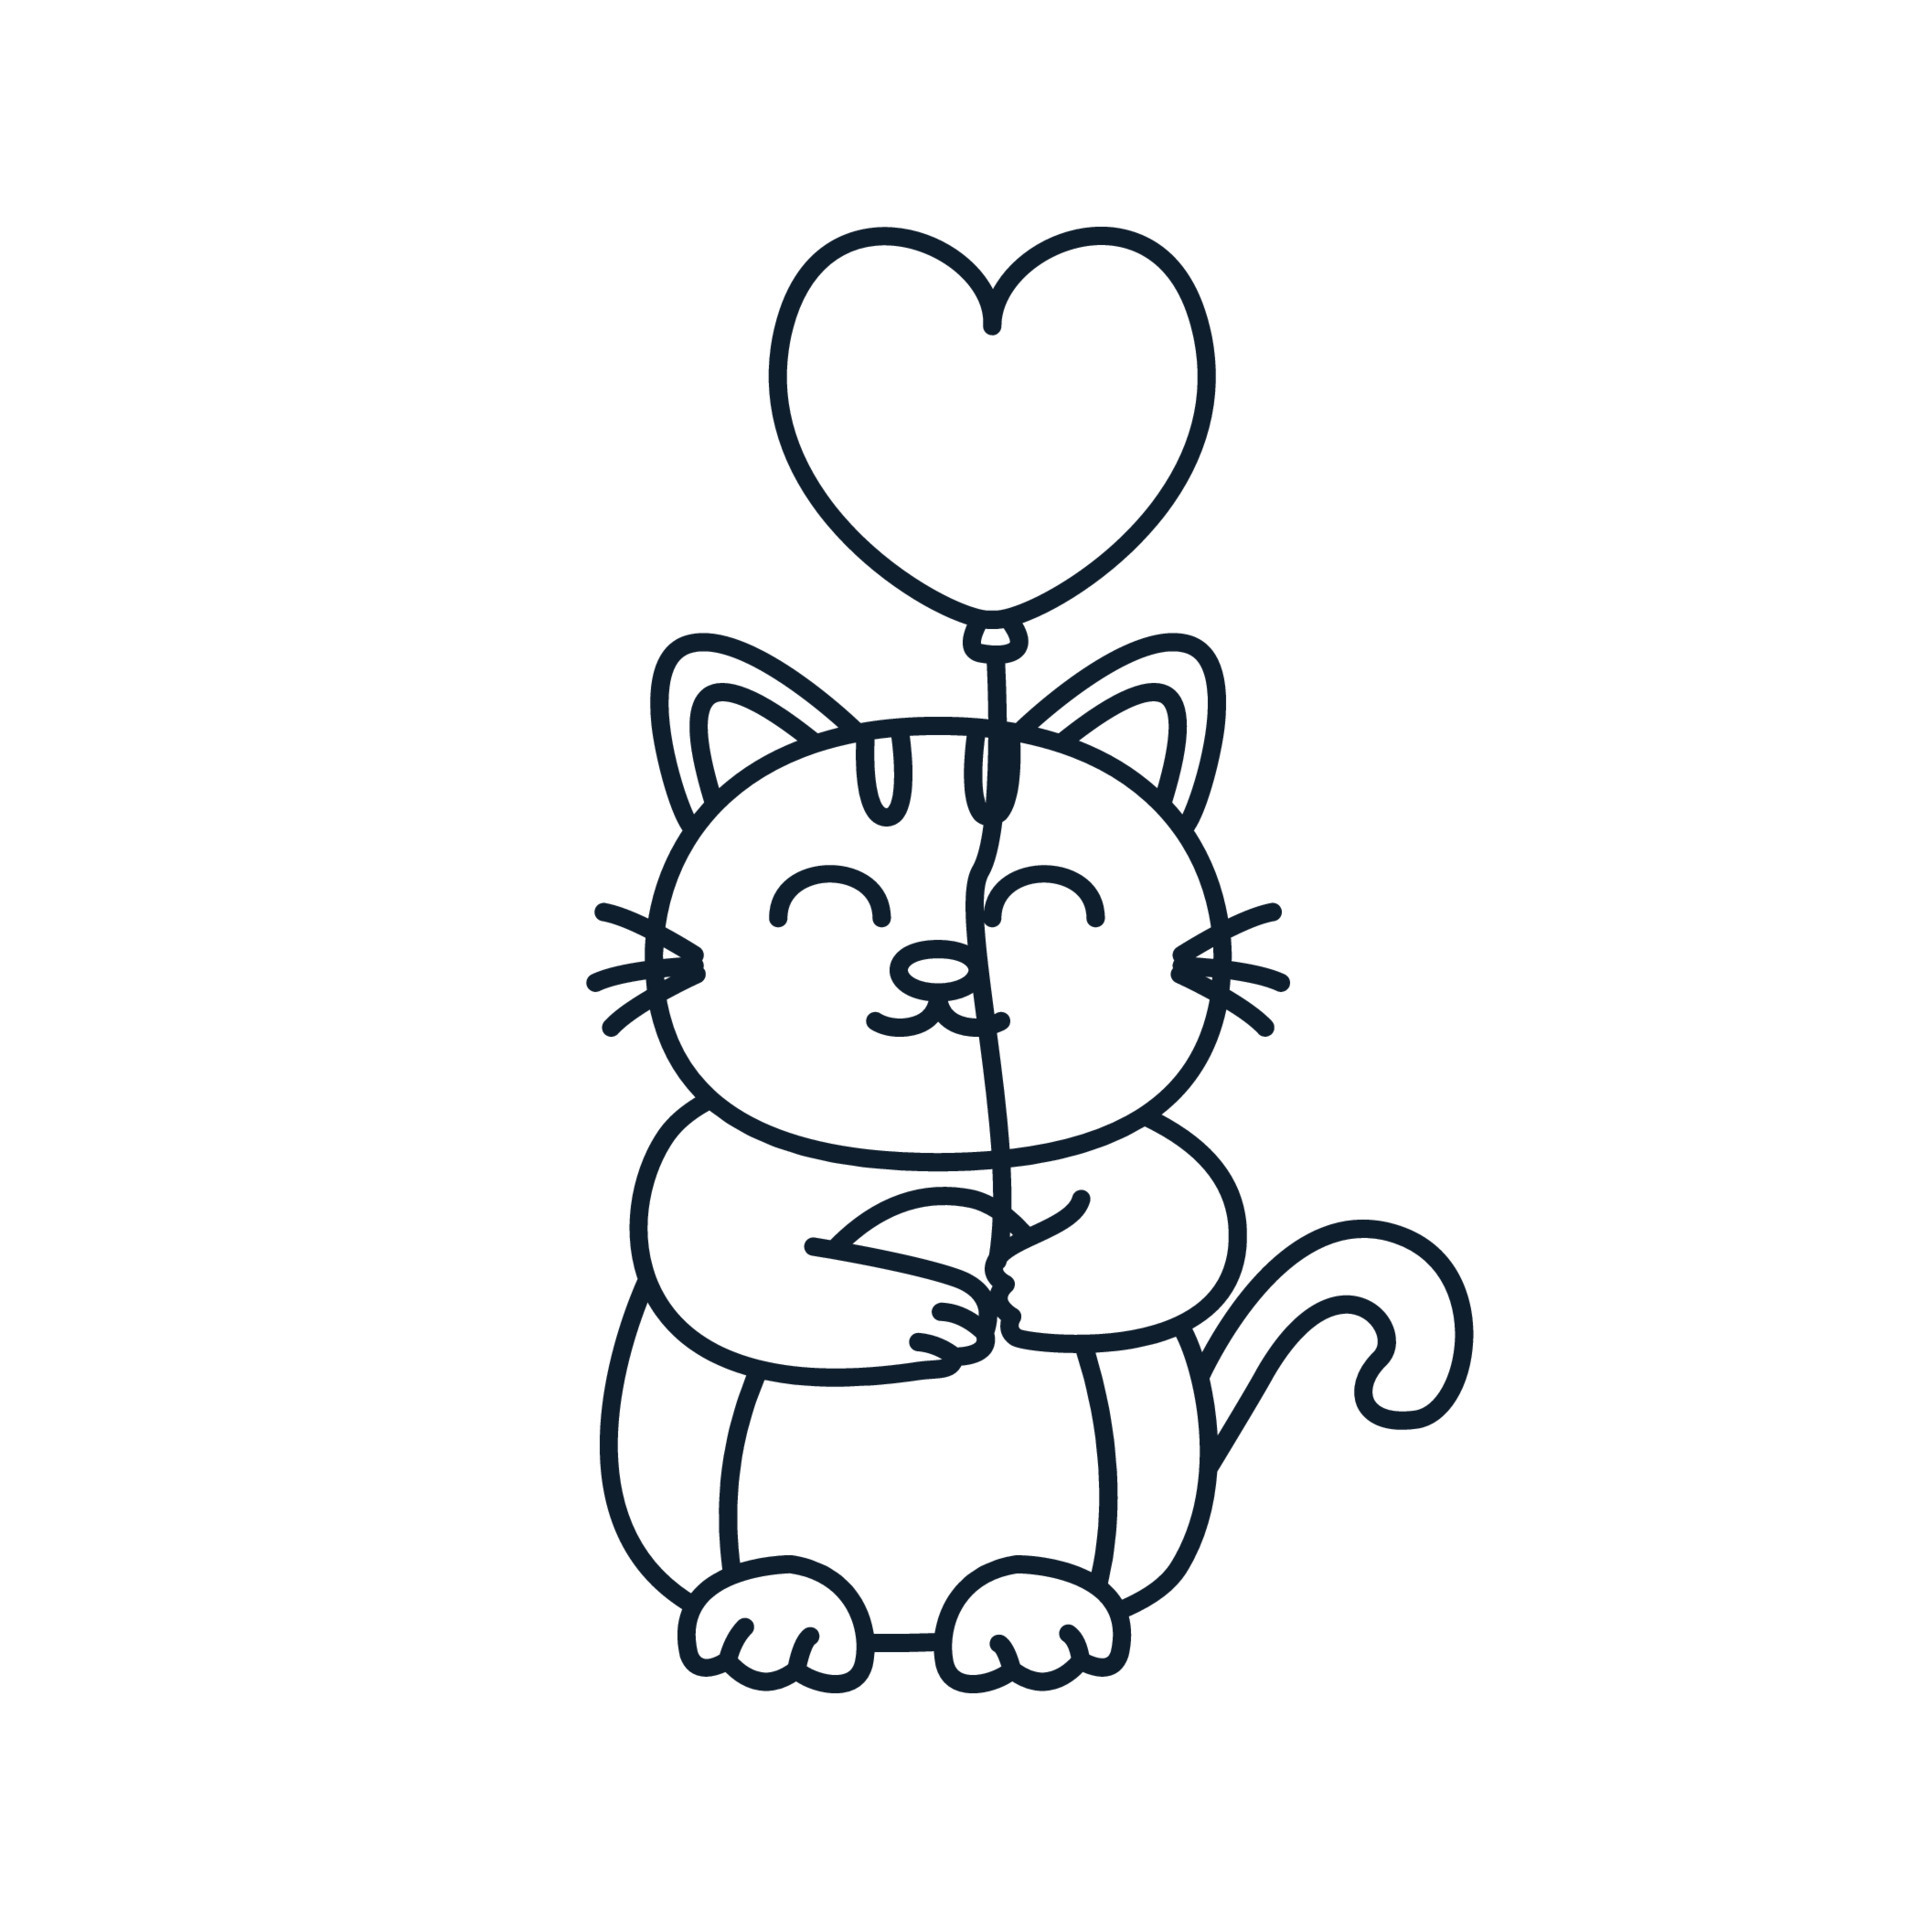 Sorriso E Jogo Do Gato Preto Com a Bola Para O ícone Do Animal De Estimação  Do Logotipo Ilustração Stock - Ilustração de redondo, gatinho: 141032998